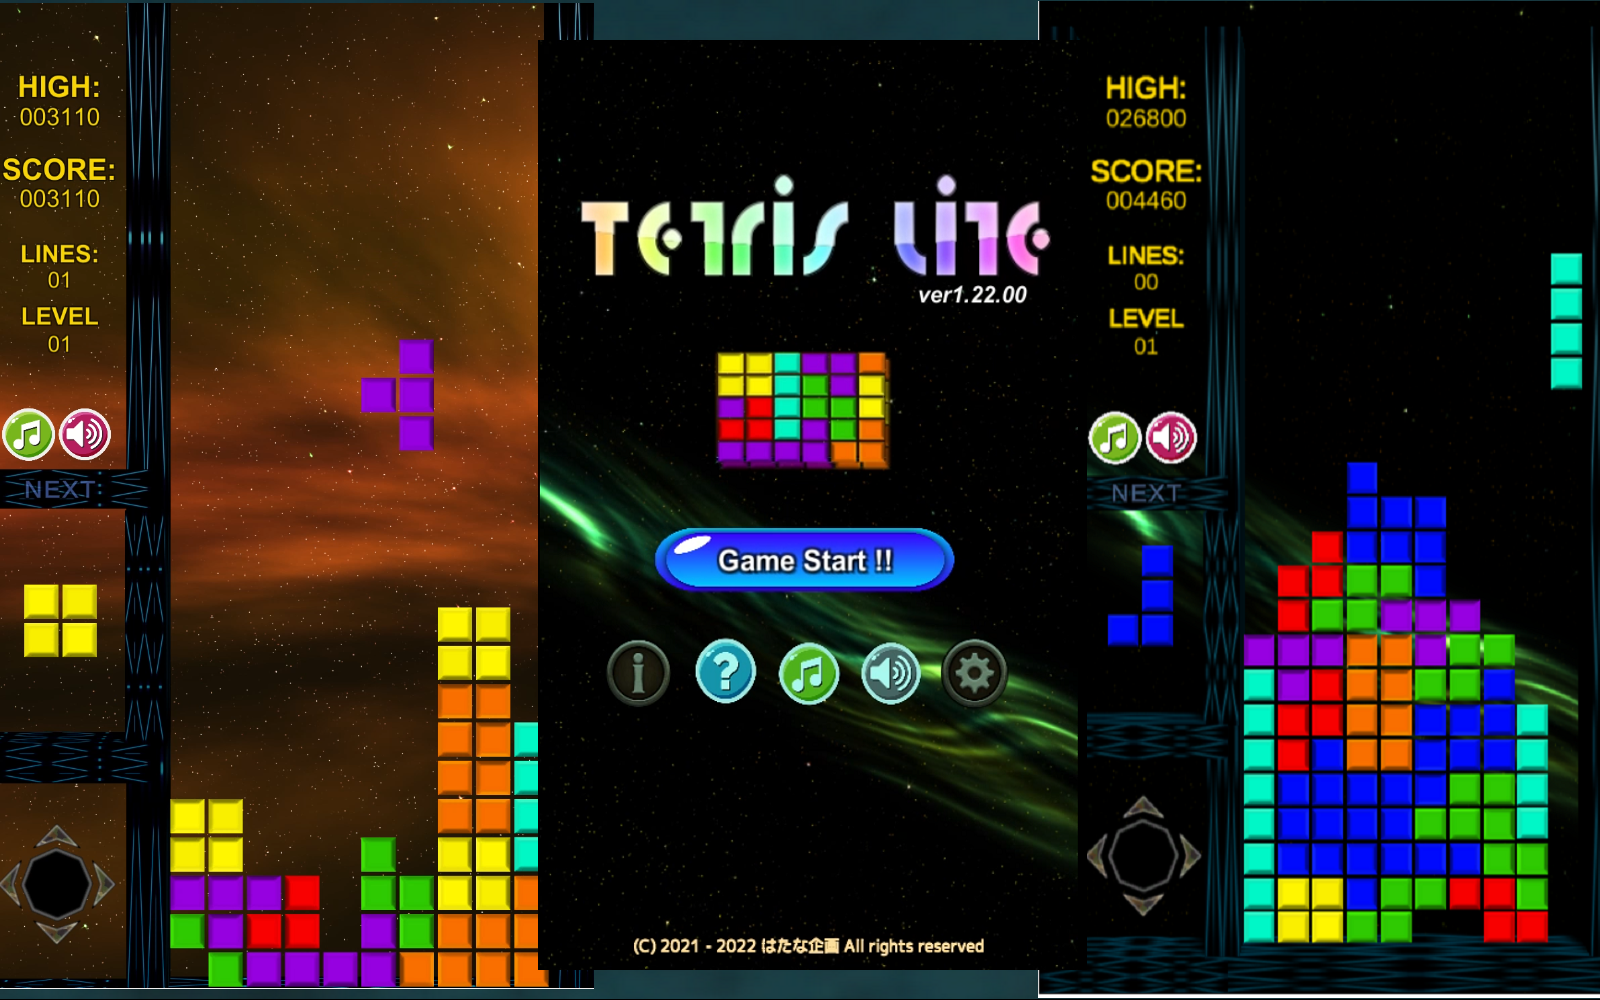 テトリス風落ち物パズルゲーム「Tetris Lite ver1.22.00」